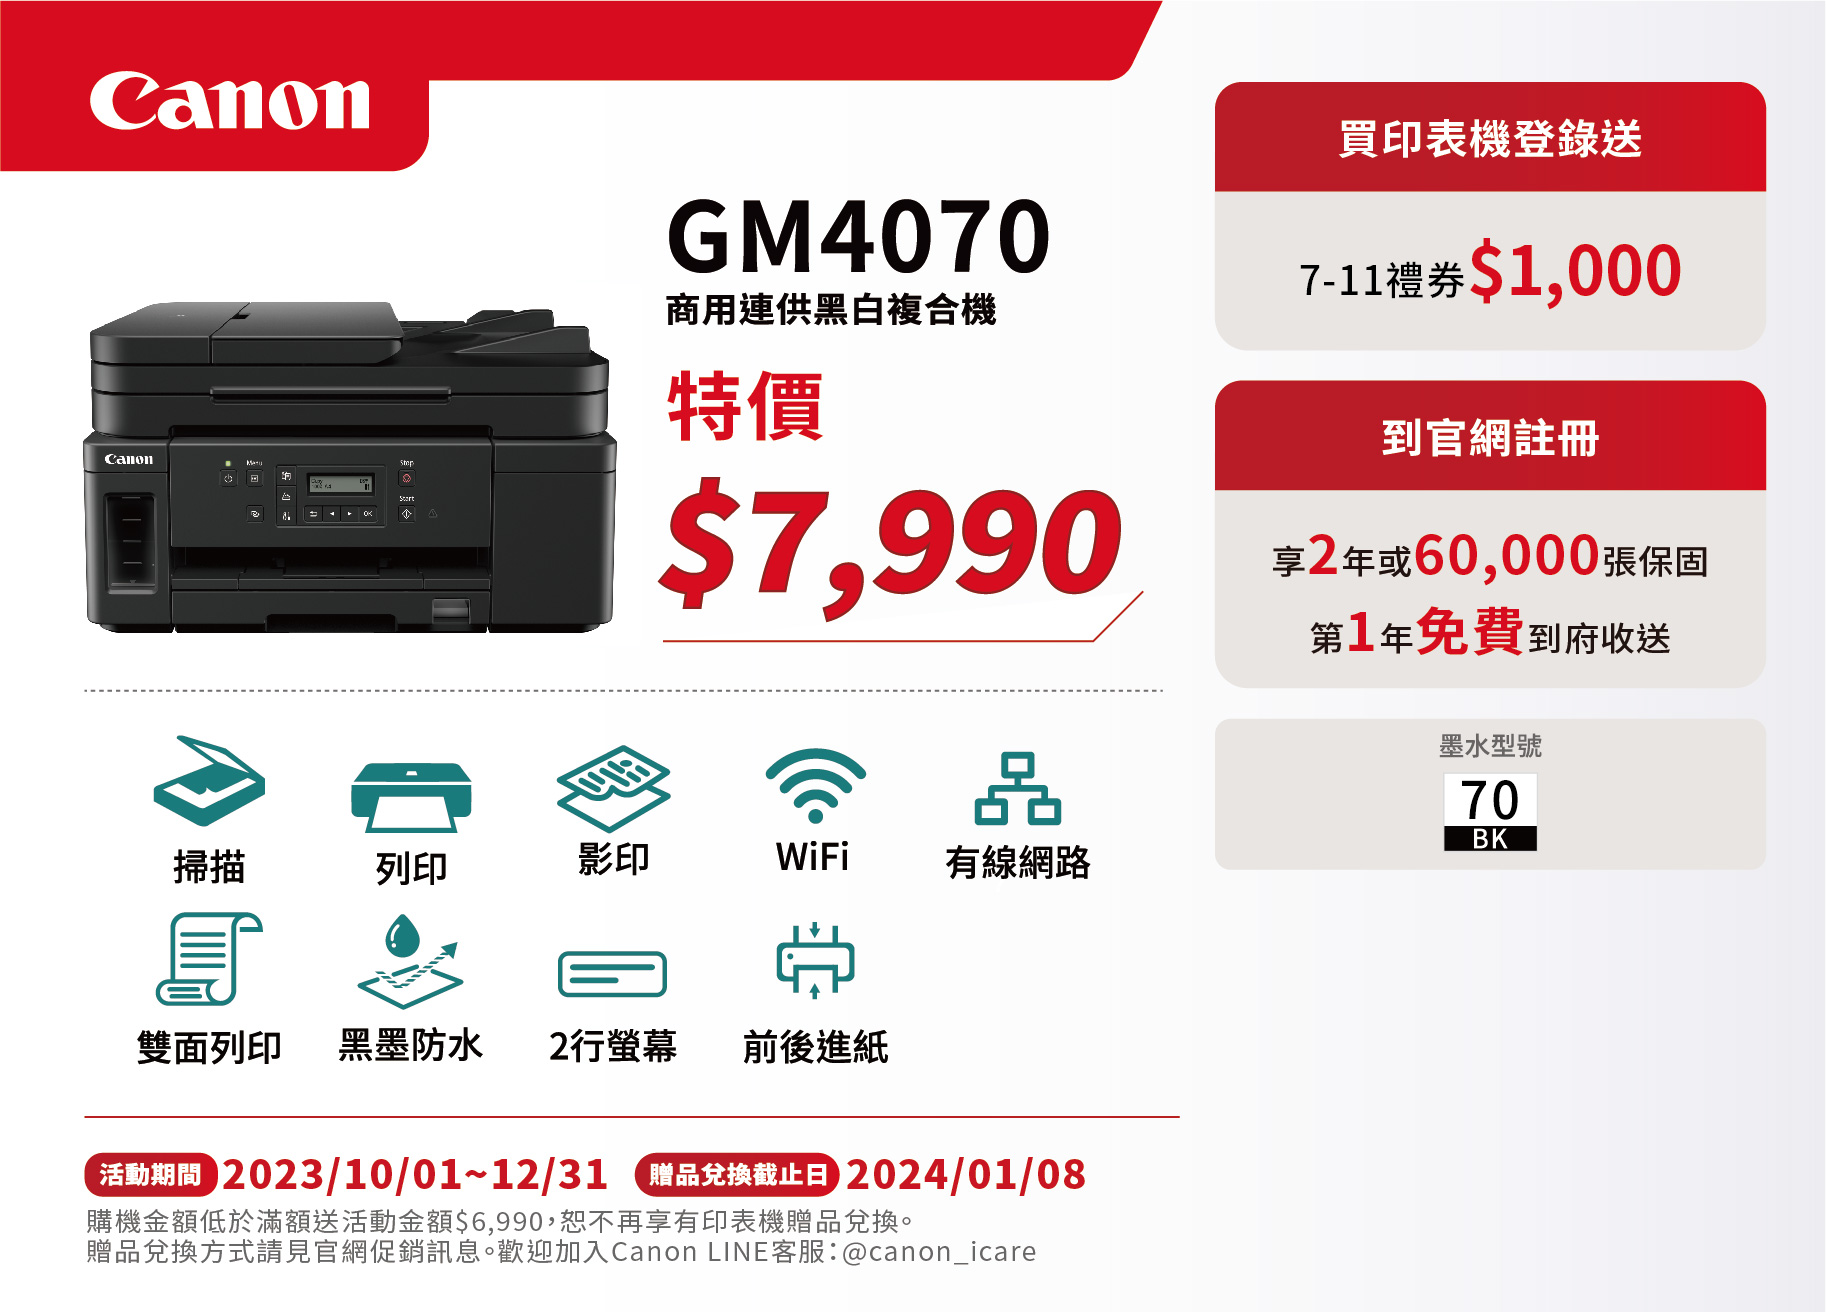 Canon-促銷DM印刷-GM4070-01